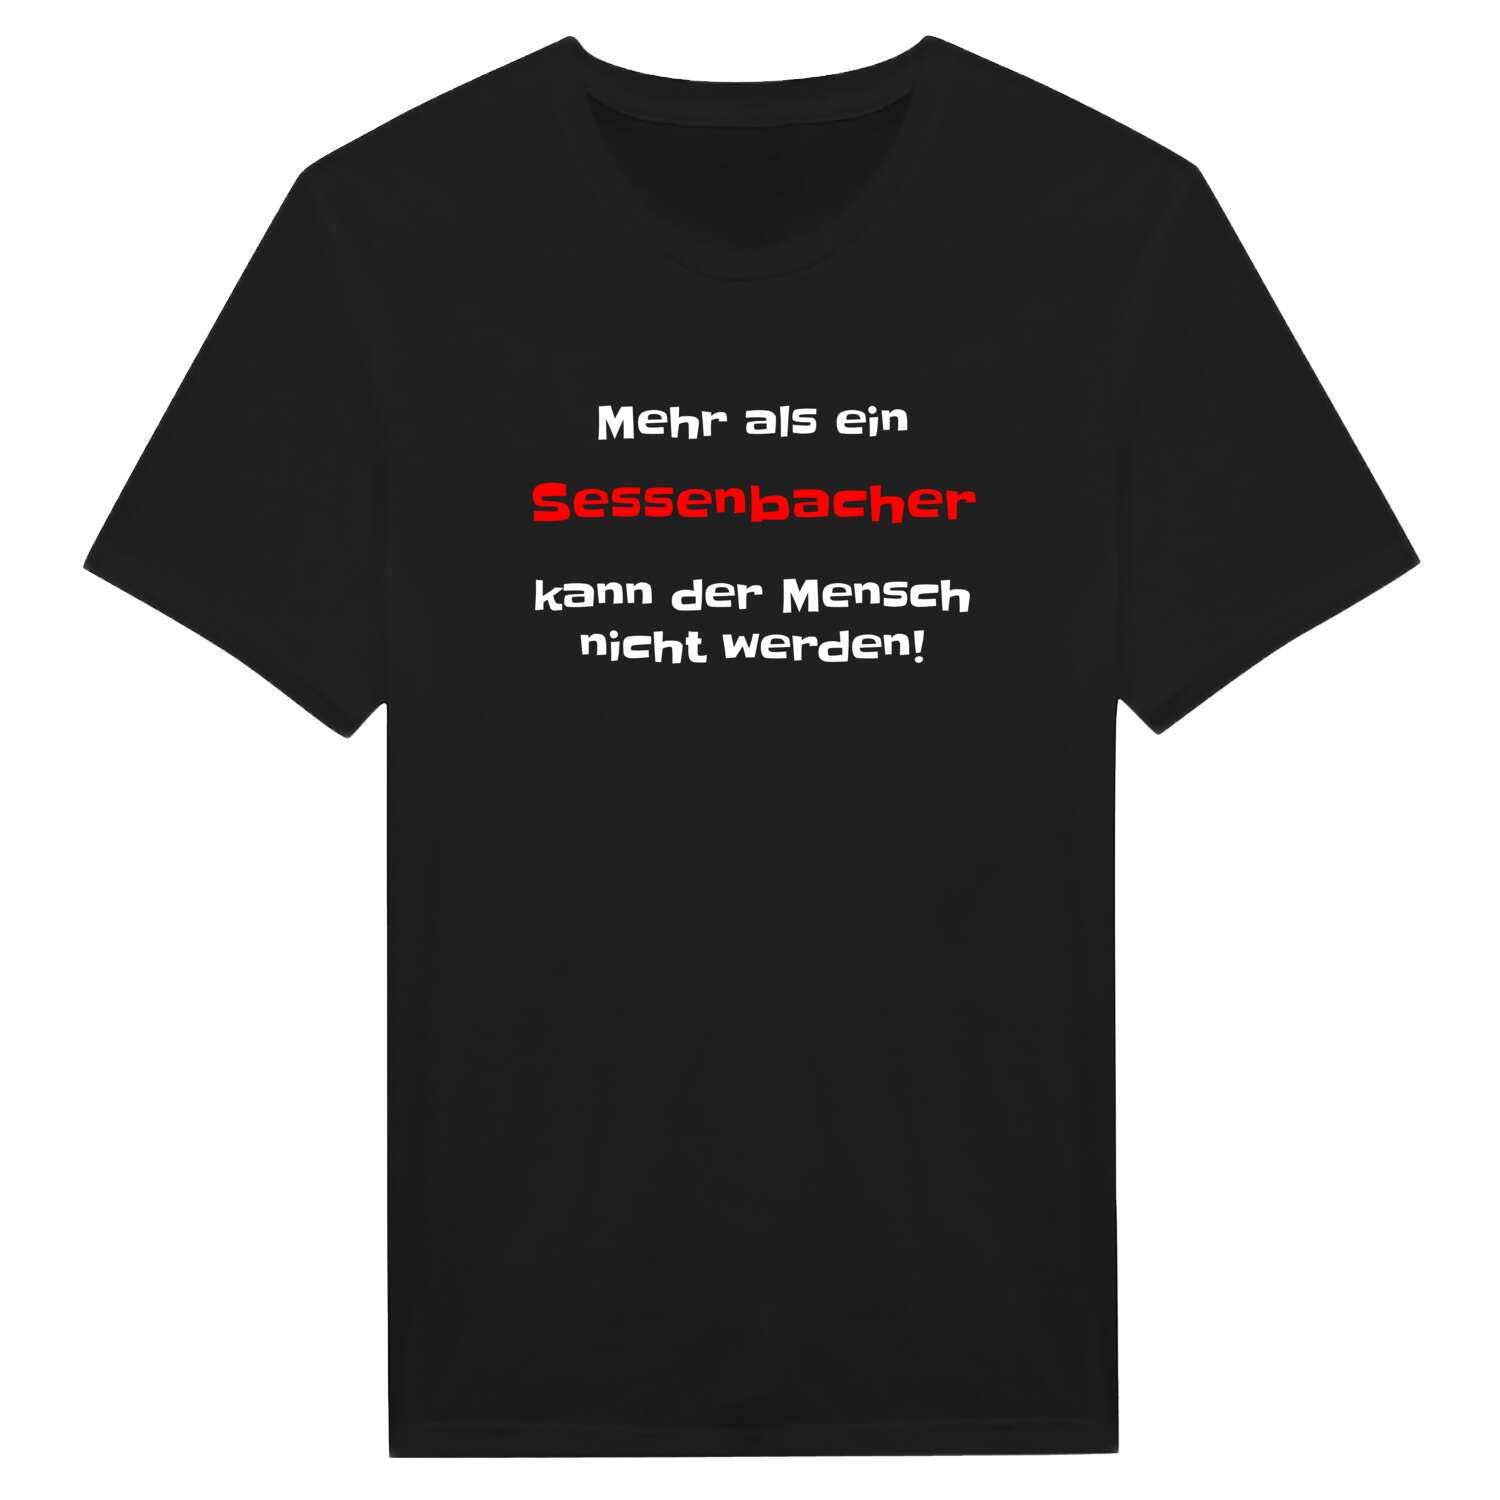 Sessenbach T-Shirt »Mehr als ein«